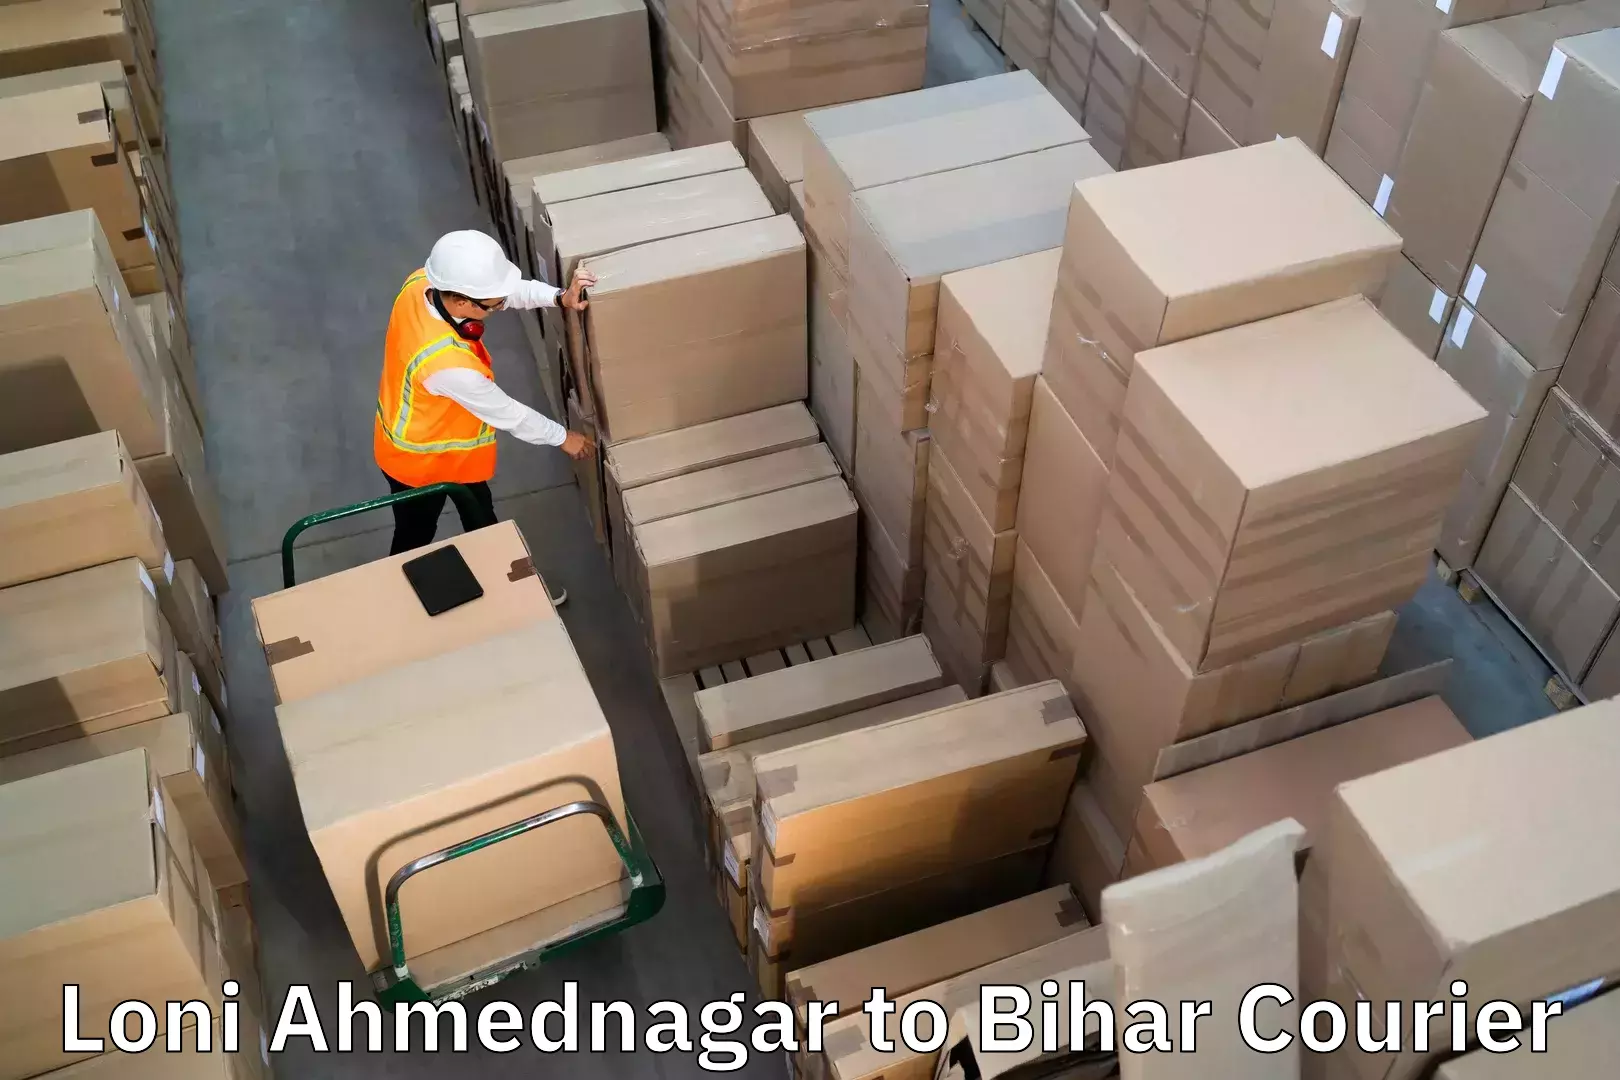 Baggage shipping service Loni Ahmednagar to Samastipur